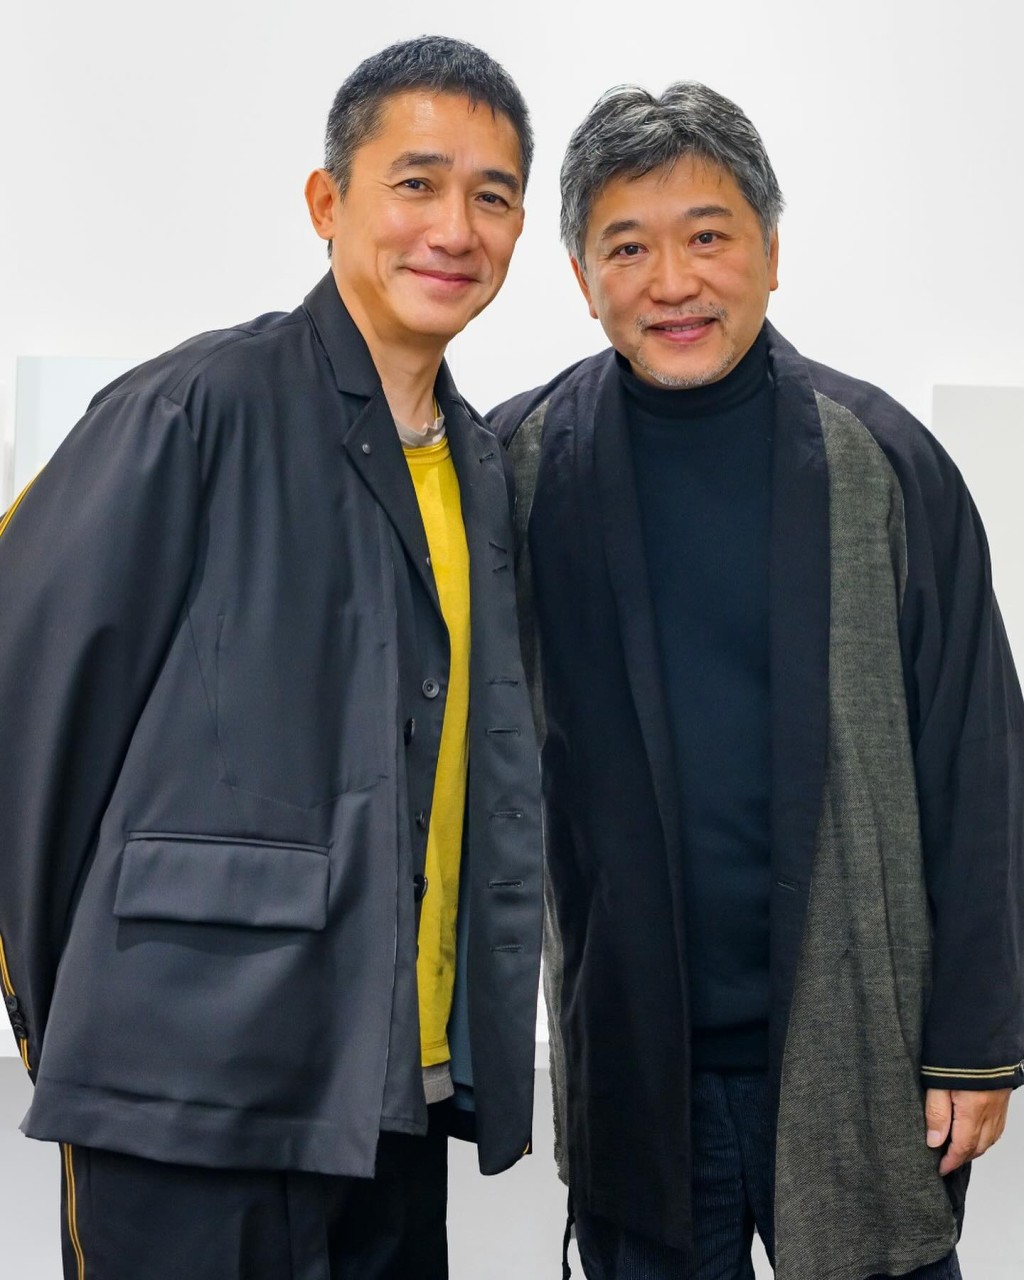 梁朝偉上月在東京電影節與日本名導演是枝裕和同場。